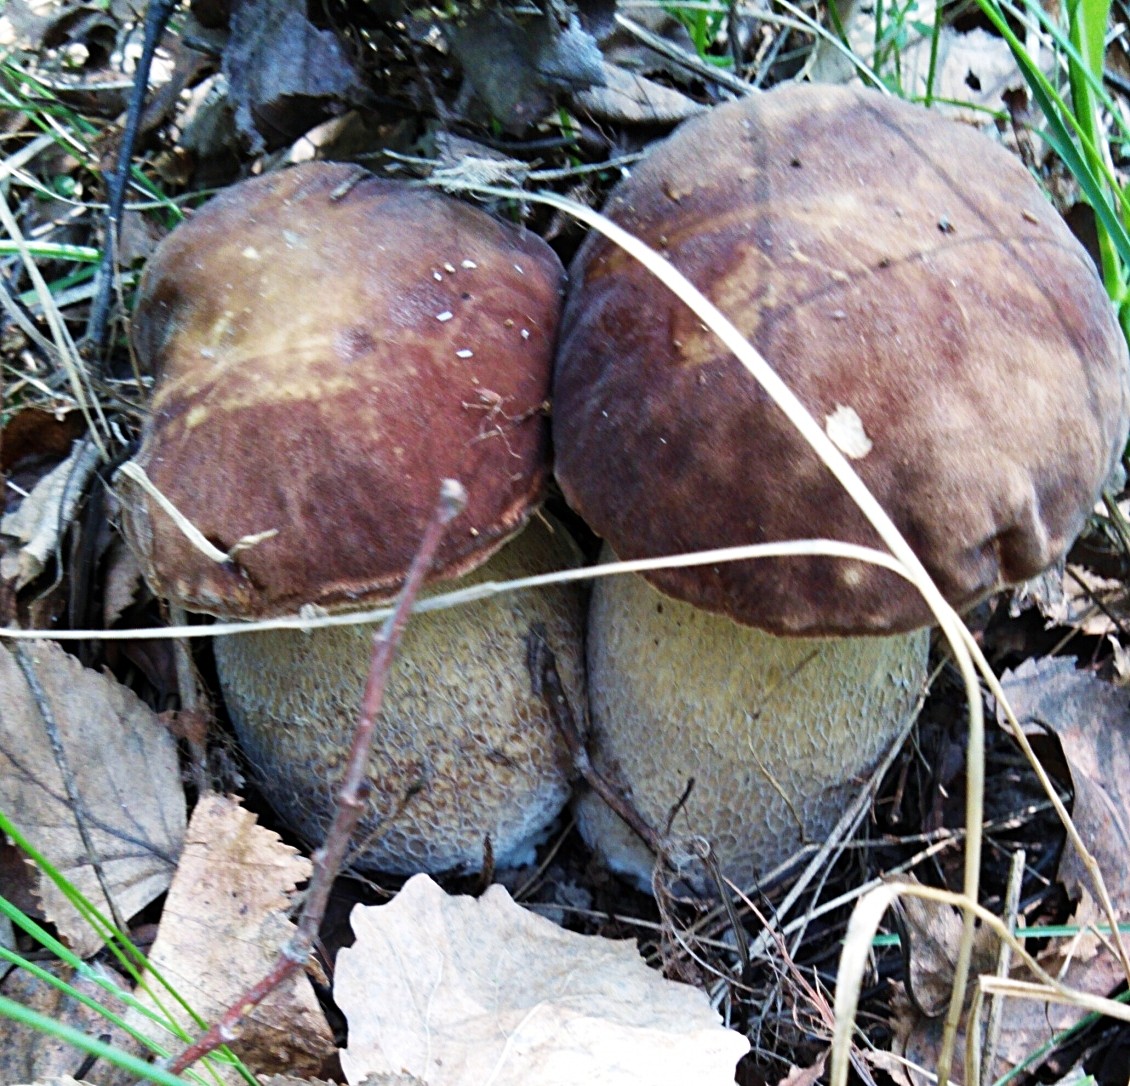 White oak mushroom (Boletus reticulatus) photo and description